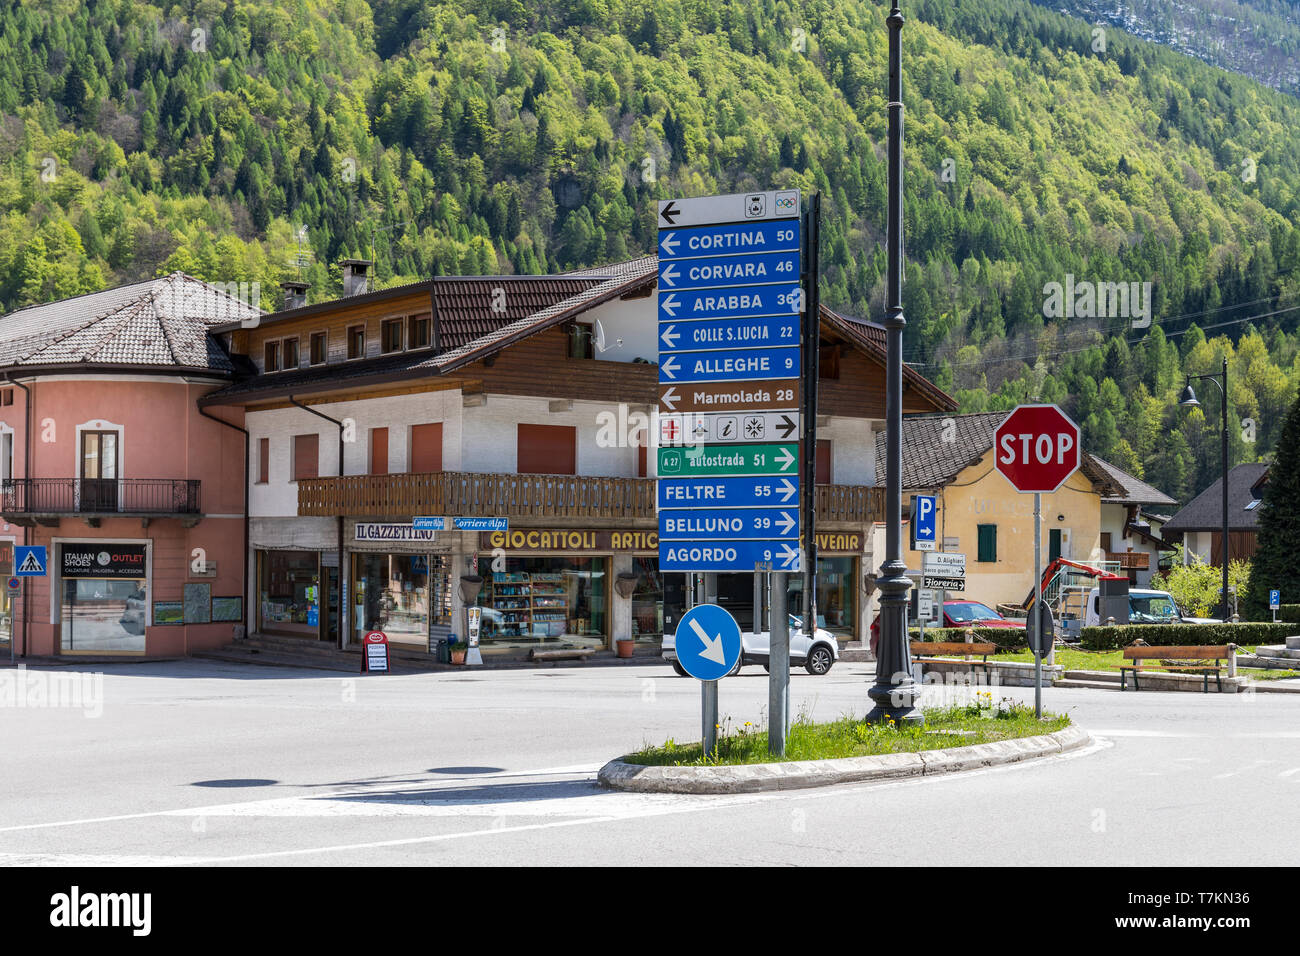 Panneau routier à Cencenighe Agordino donner des directions et distances vers différentes destinations dans les Dolomites, Italie Banque D'Images